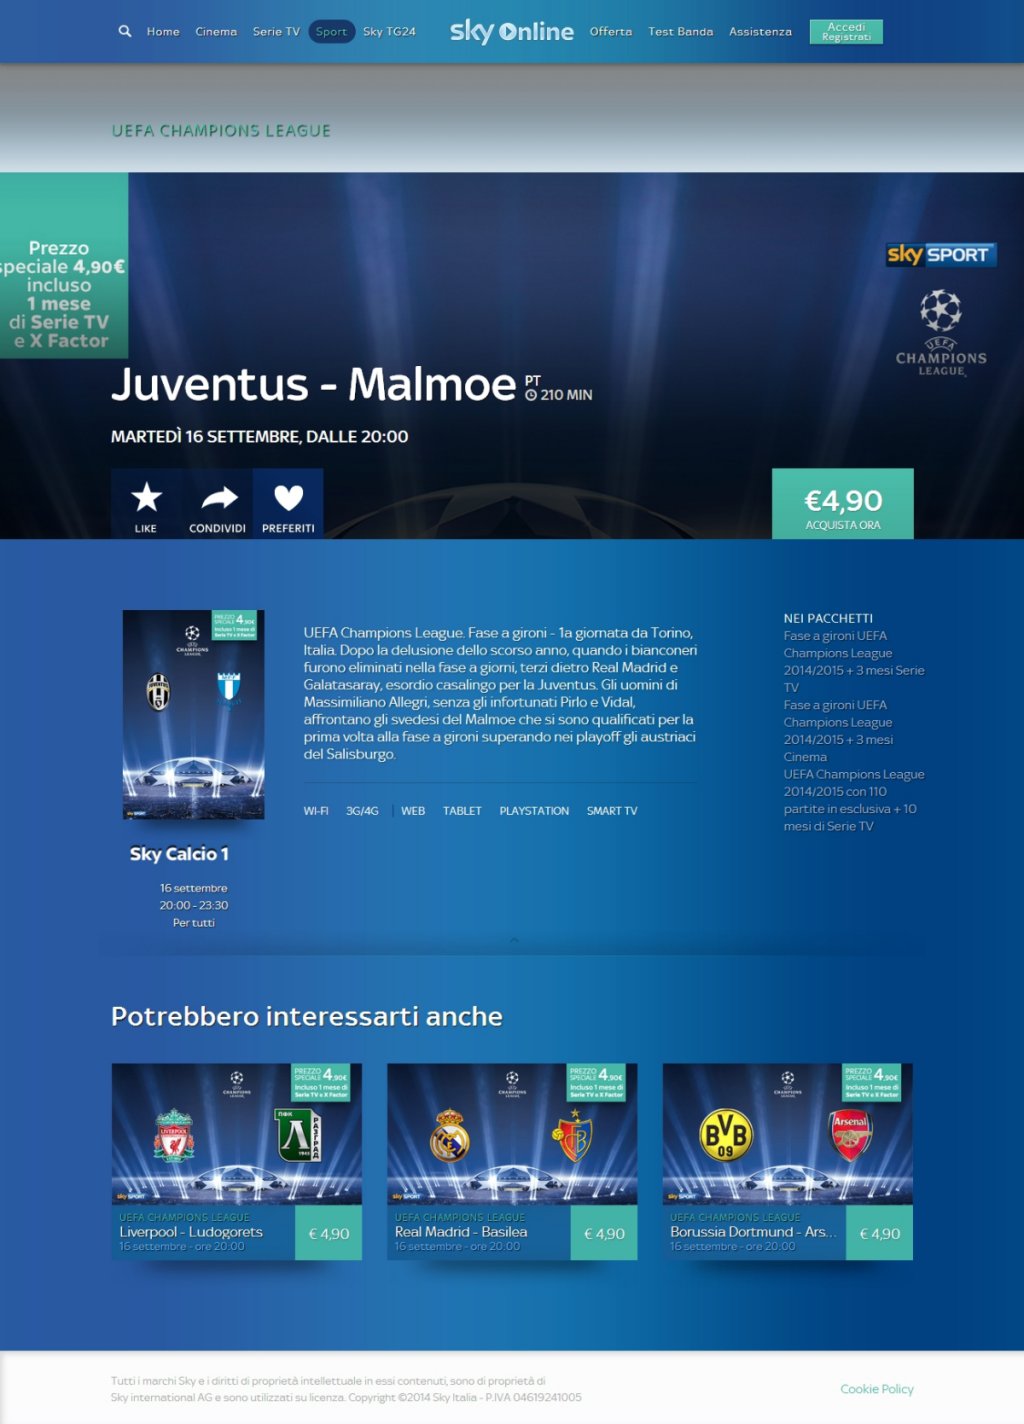 Juventus - Malmoe, 1 mese di Serie e X Factor su Sky Online a 4,90 euro